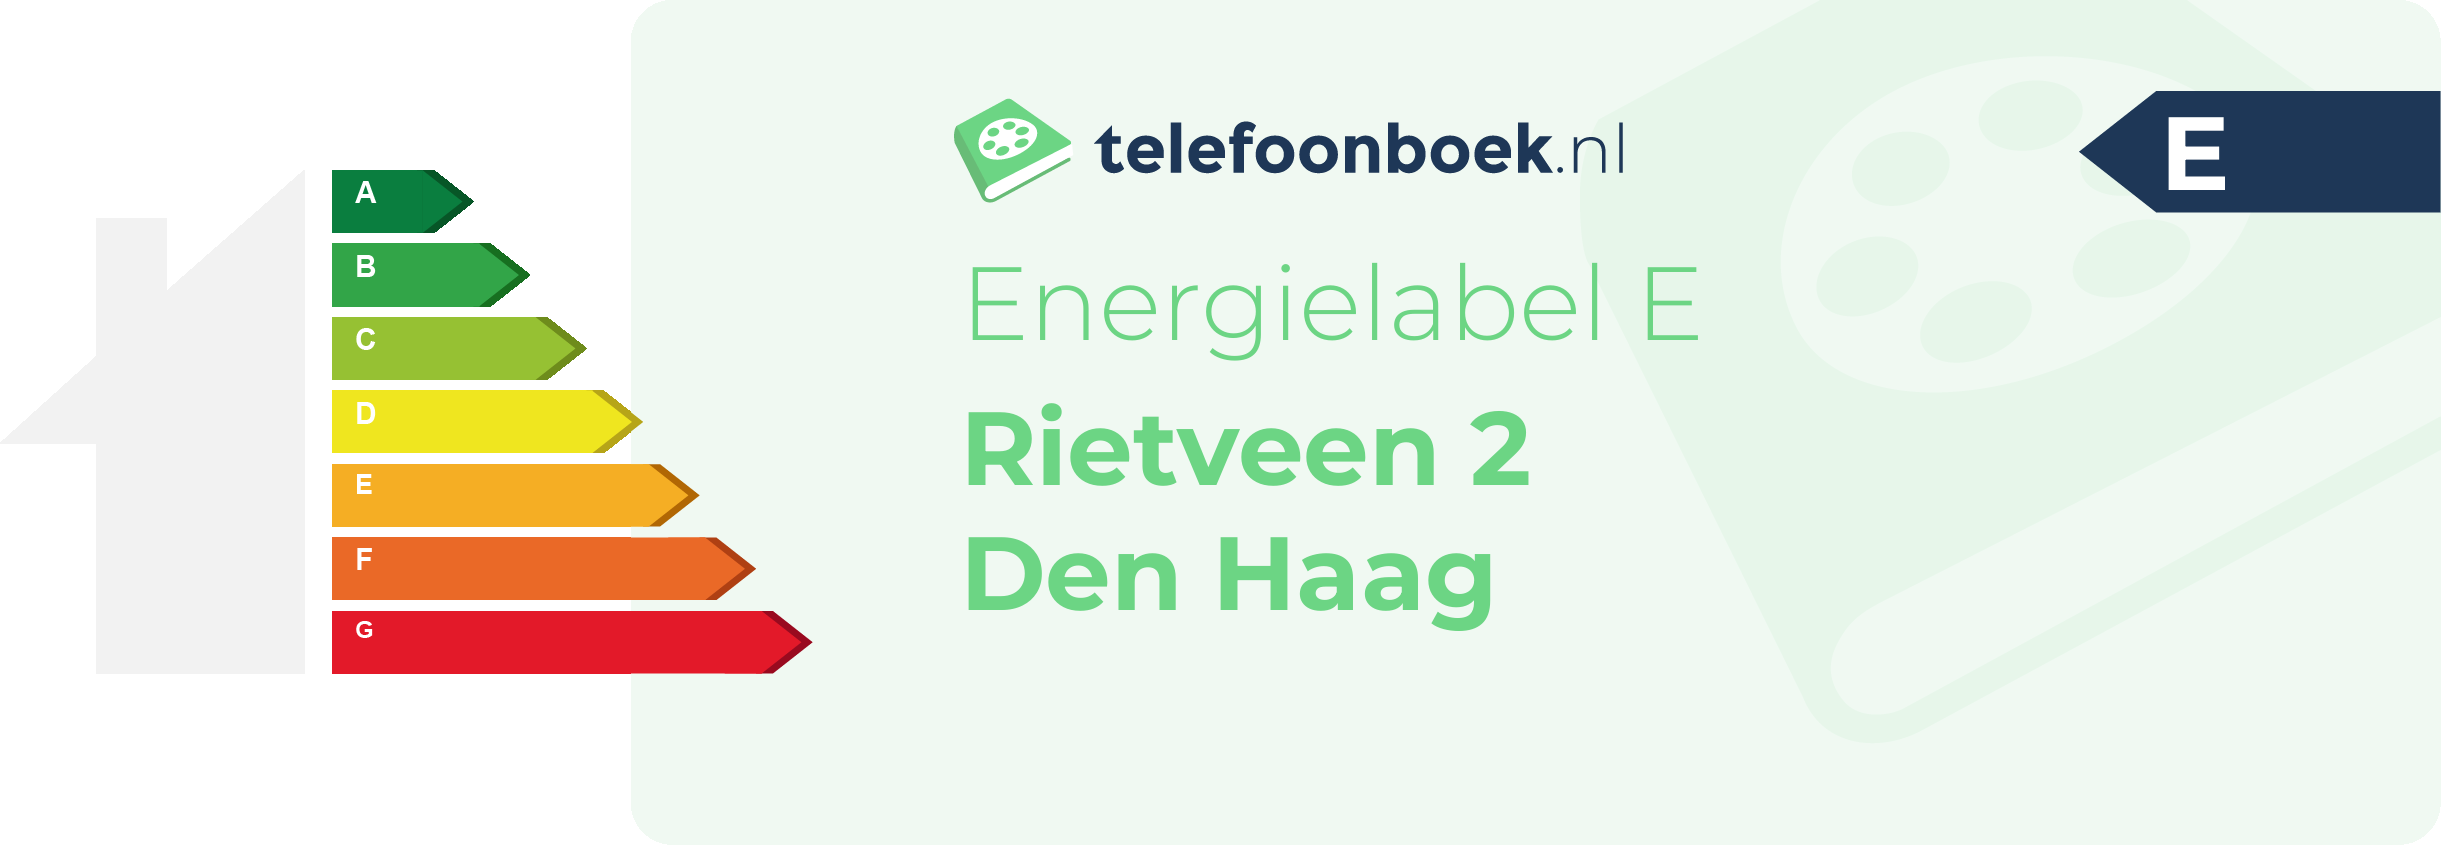 Energielabel Rietveen 2 Den Haag